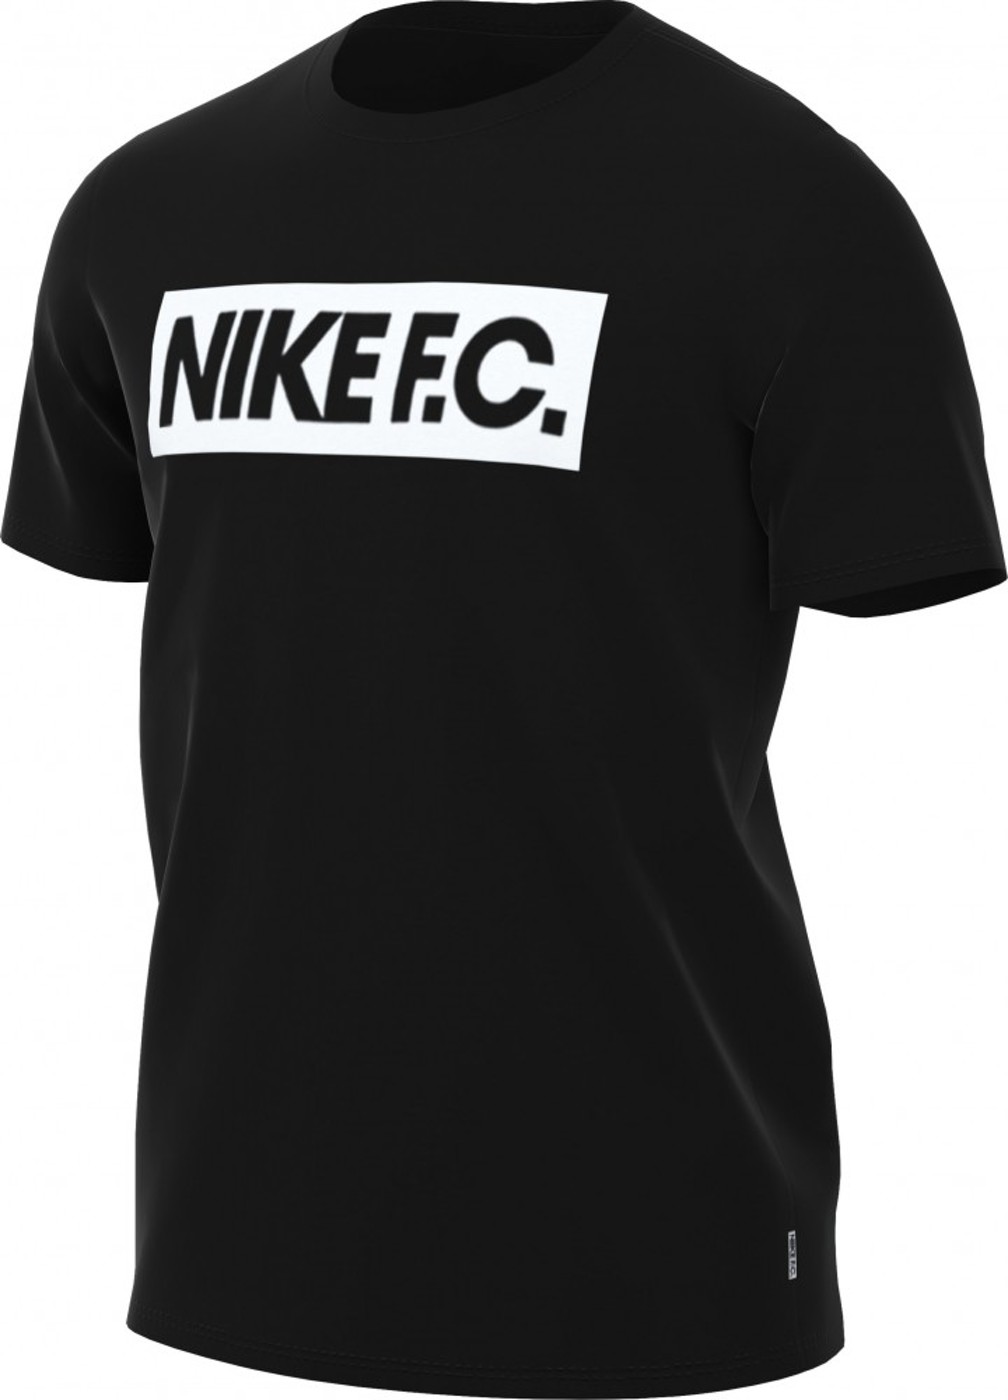 Nike F.C. Soccer T-Shirt - Herren